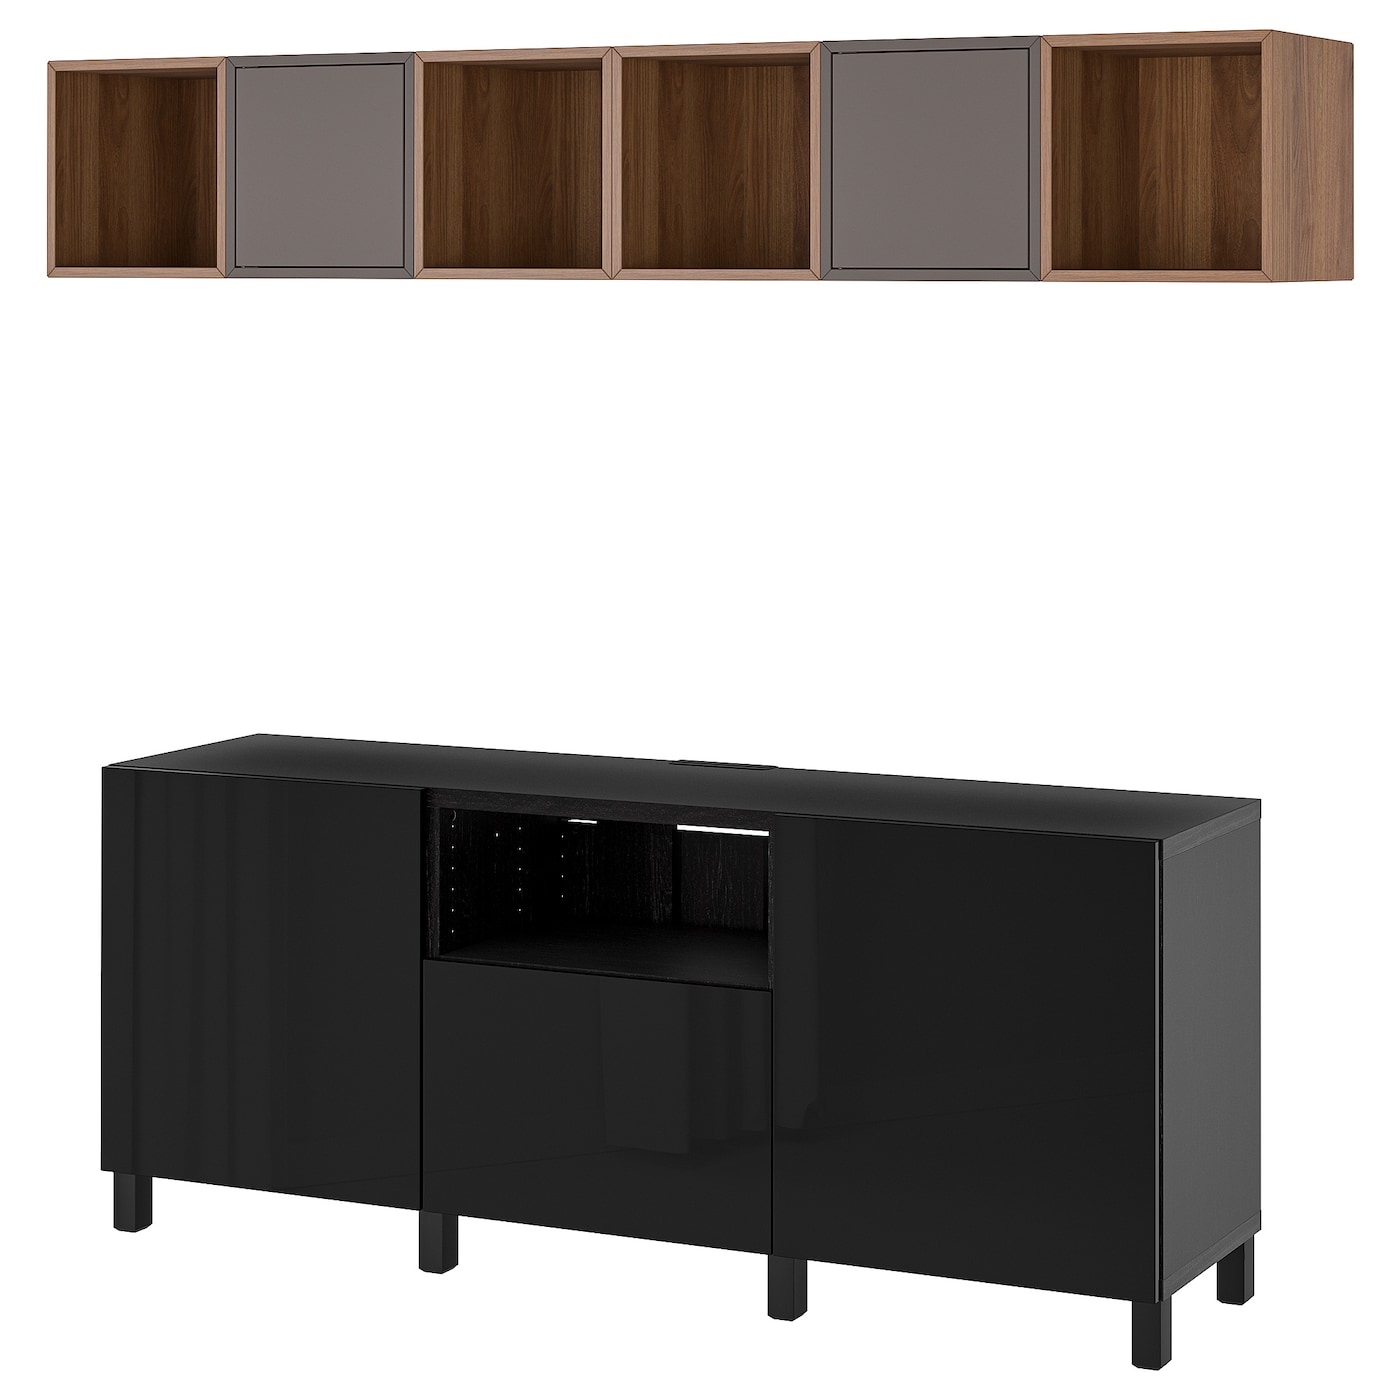 Комплект мебели д/гостиной  - IKEA BESTÅ/BESTA EKET, 220x70x210см, черный/темно-коричневый, БЕСТО ЭКЕТ ИКЕА